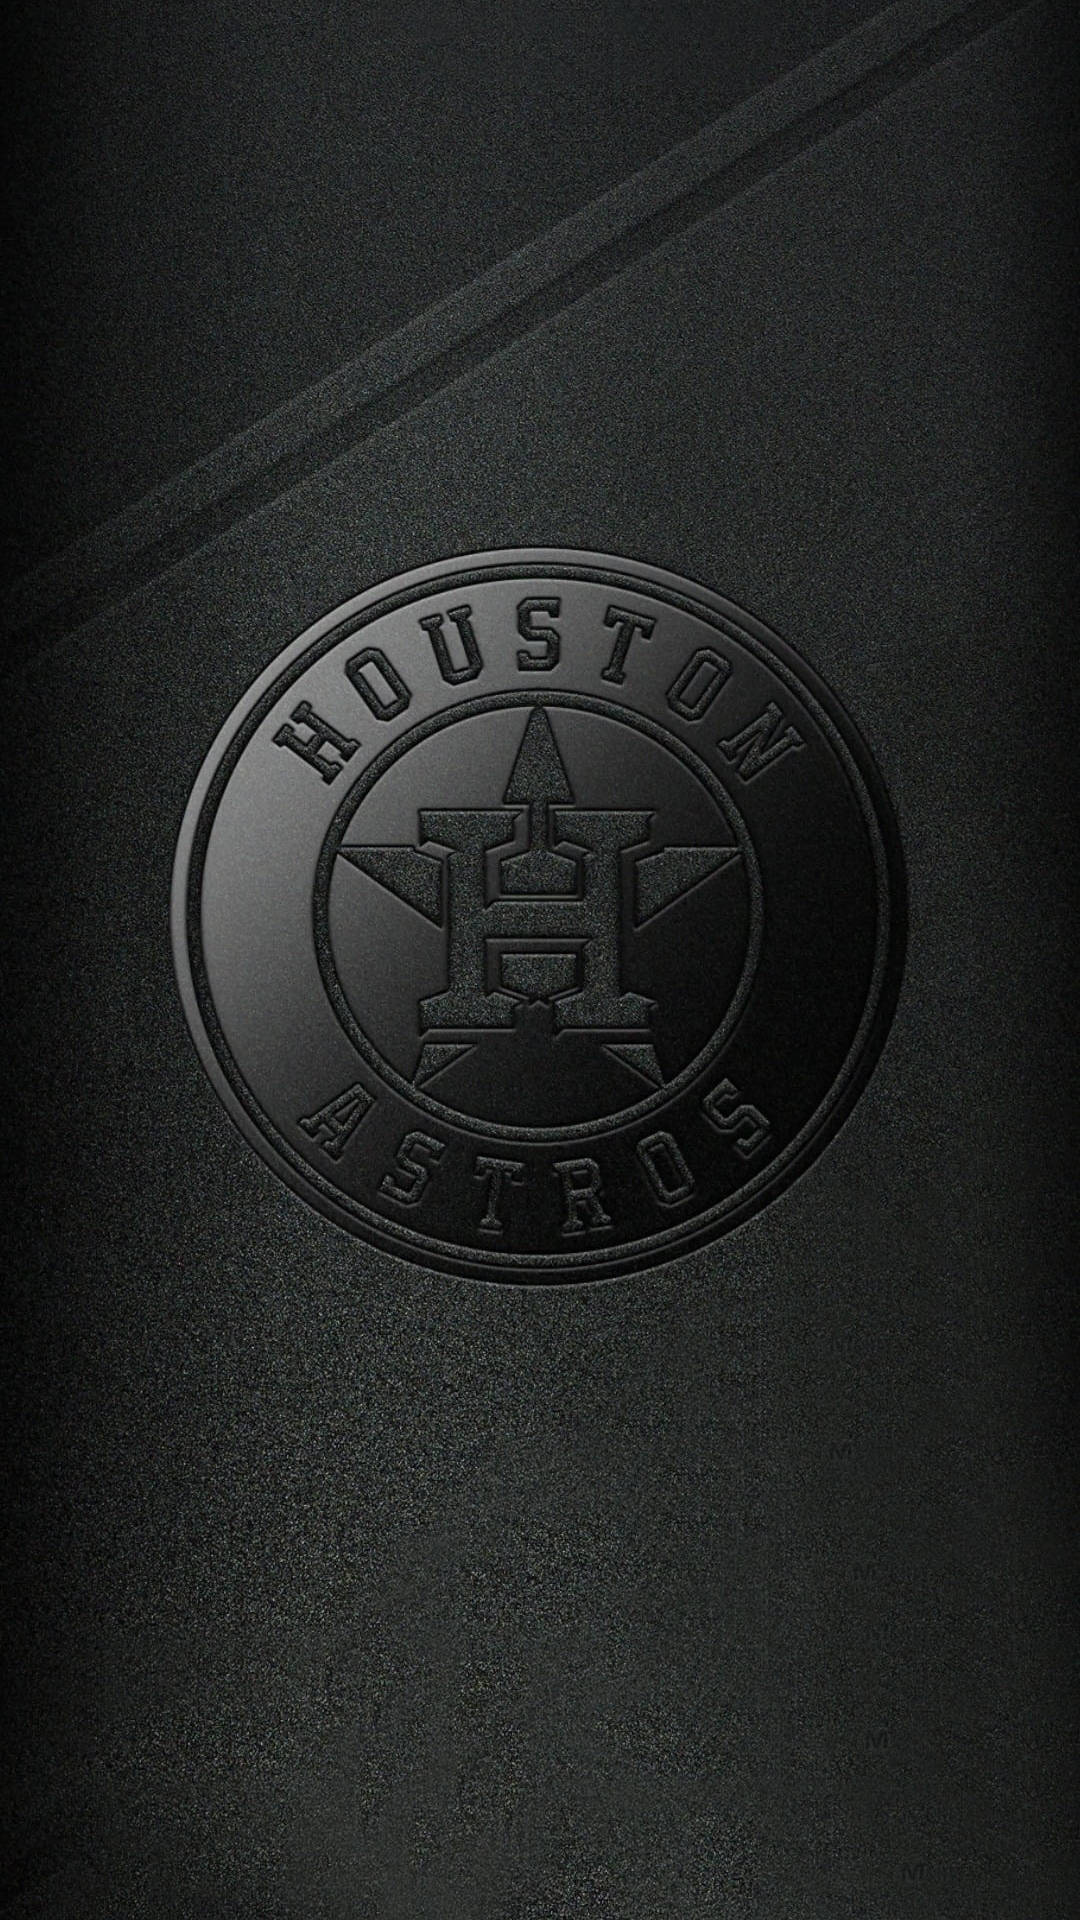 Hoston Astros Wallpaper by texasOB1 on DeviantArt